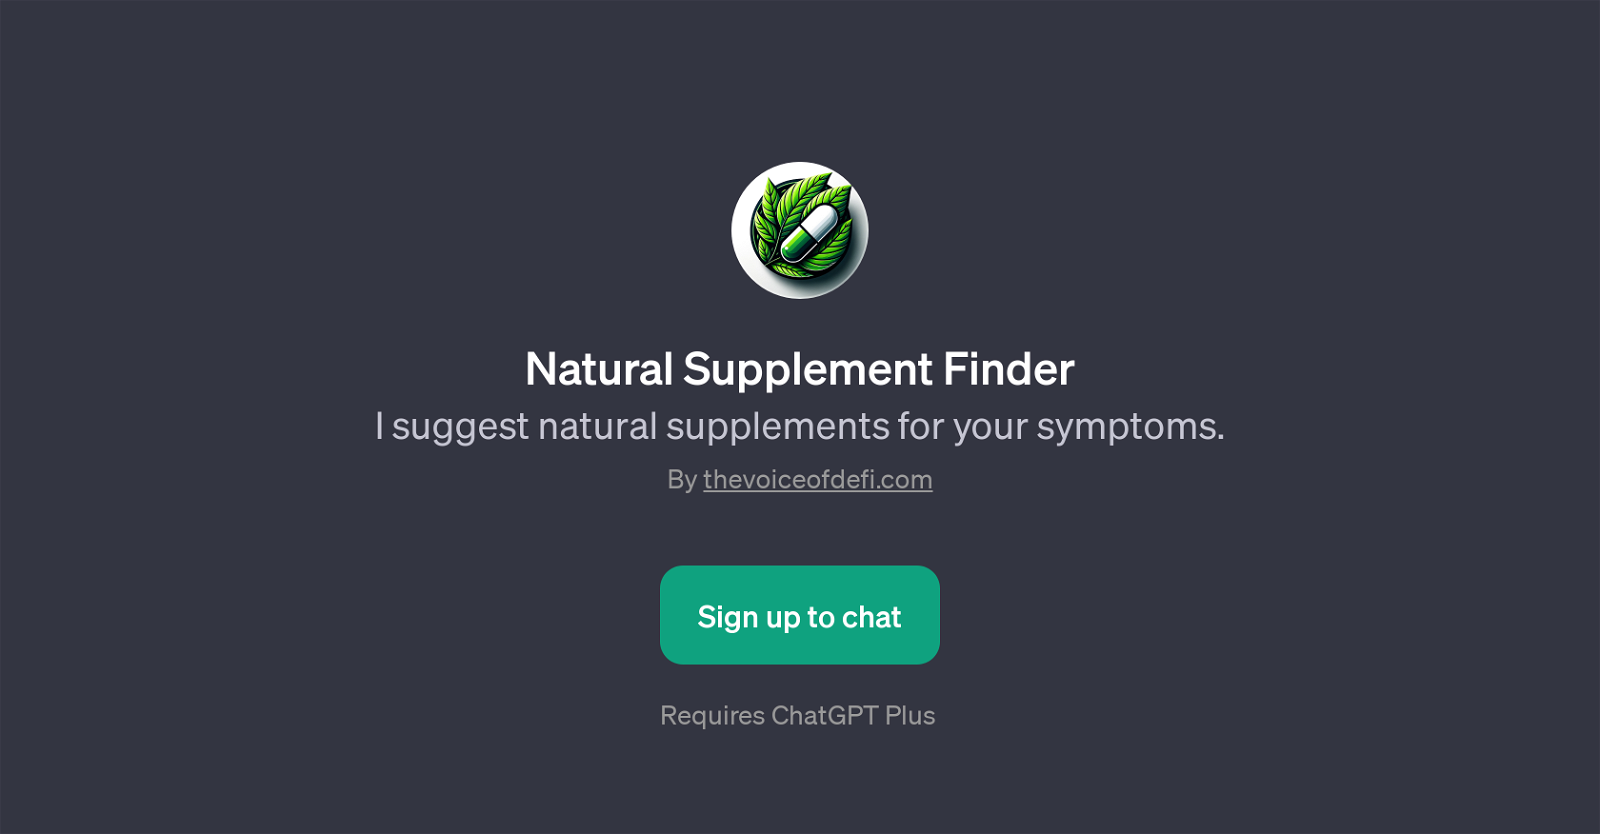 Natural Supplement Finder website